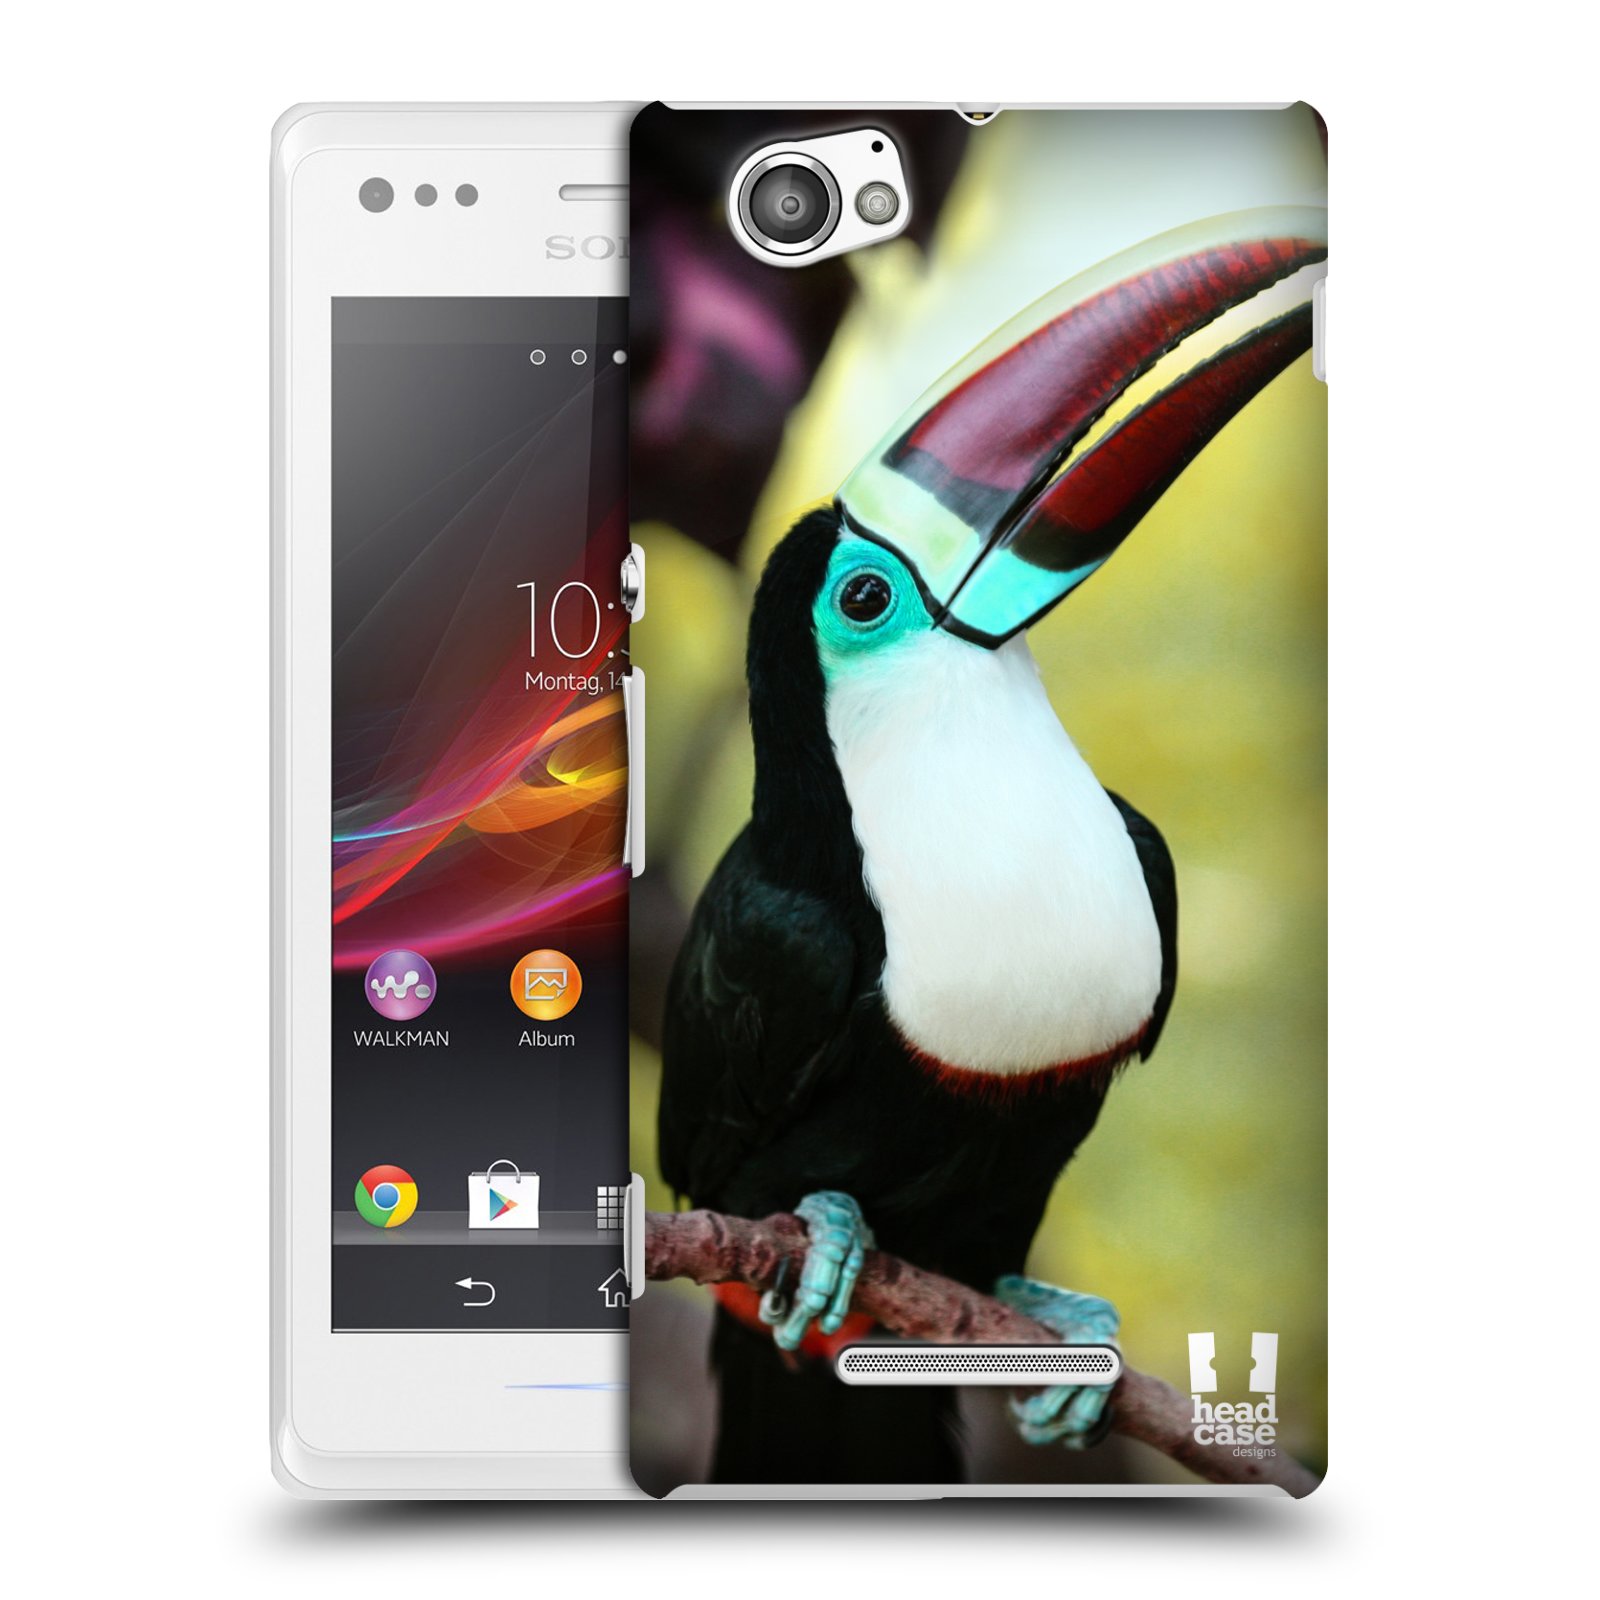 HEAD CASE plastový obal na mobil Sony Xperia M vzor slavná zvířata foto tukan